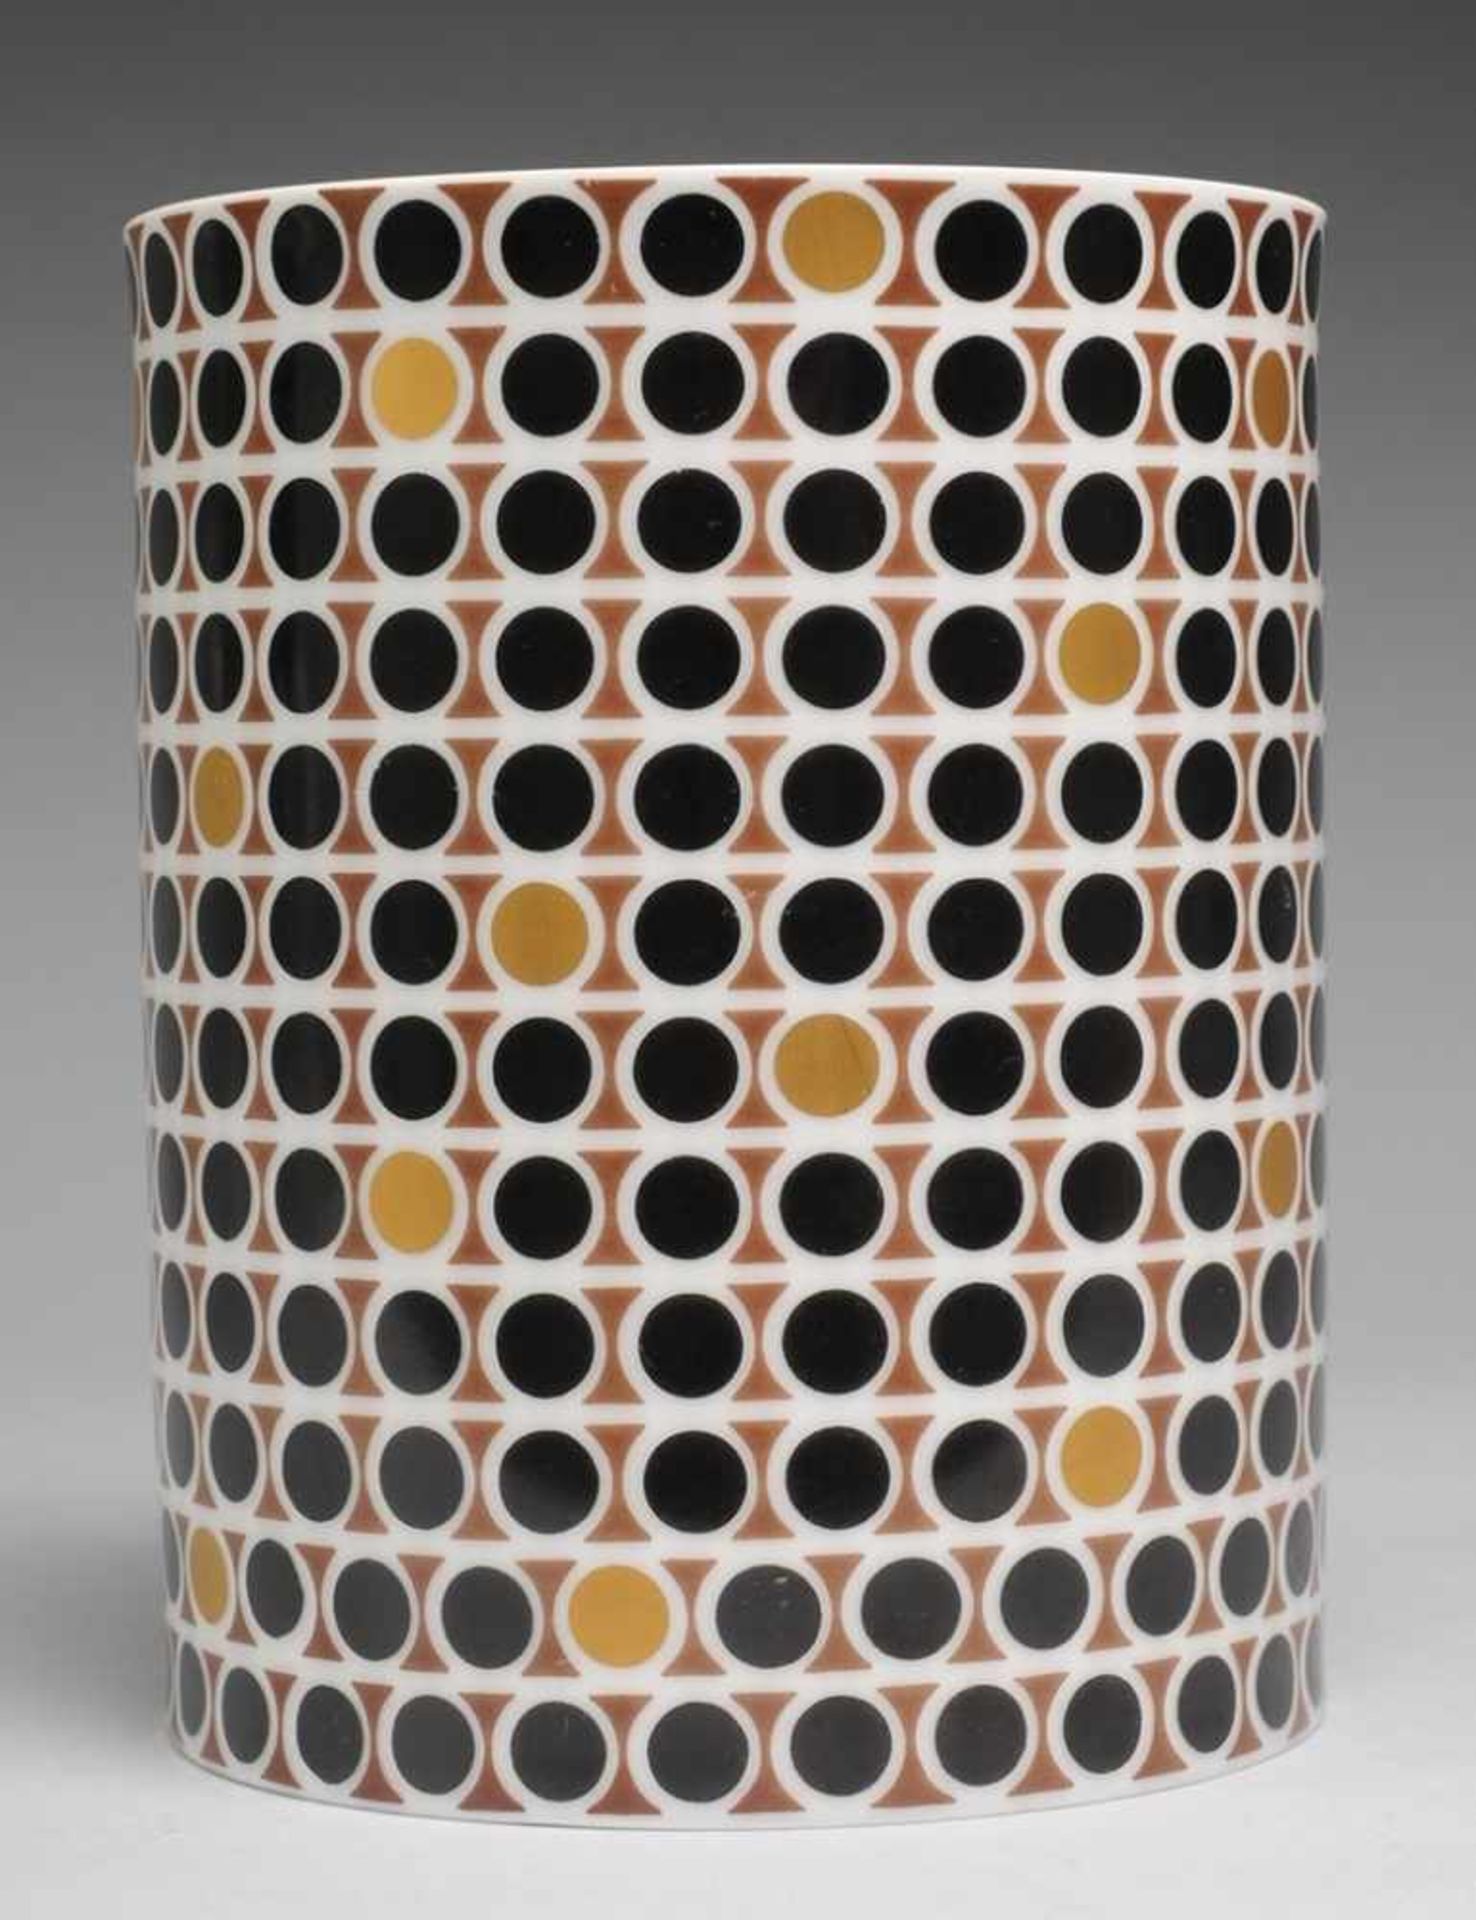 Vase mit geometrischem DekorPorzellan. Zylindrischer Korpus. Umlaufend geometrischer Dekor in Braun,